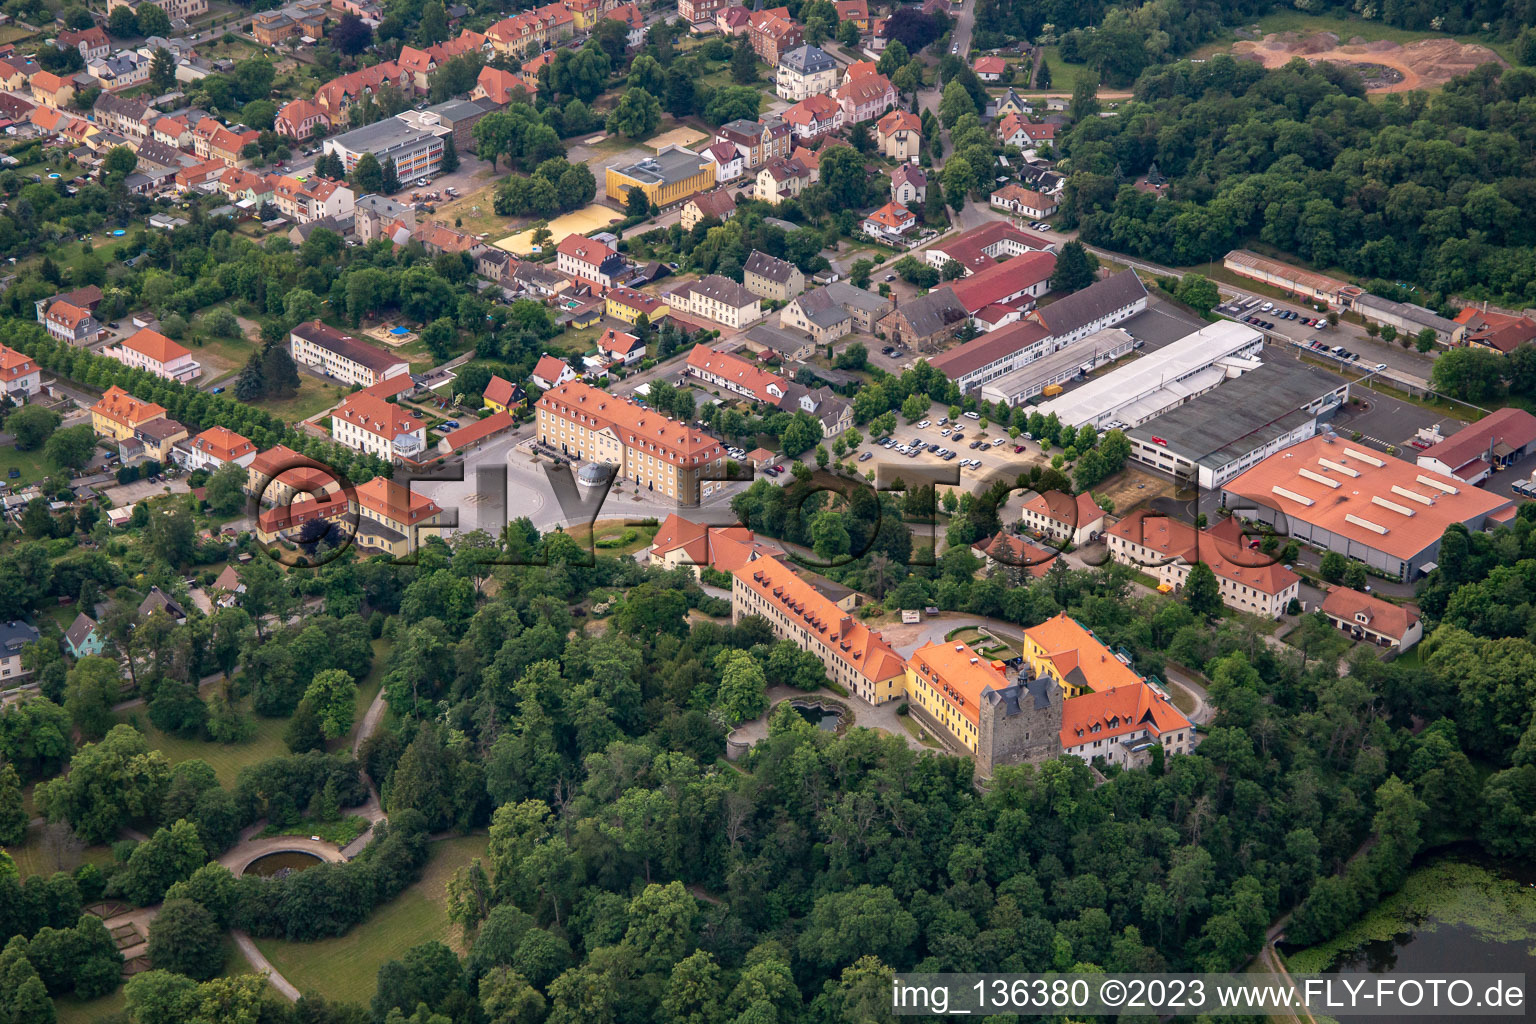 Vue aérienne de Château et parc du château Ballenstedt eV à Ballenstedt dans le département Saxe-Anhalt, Allemagne